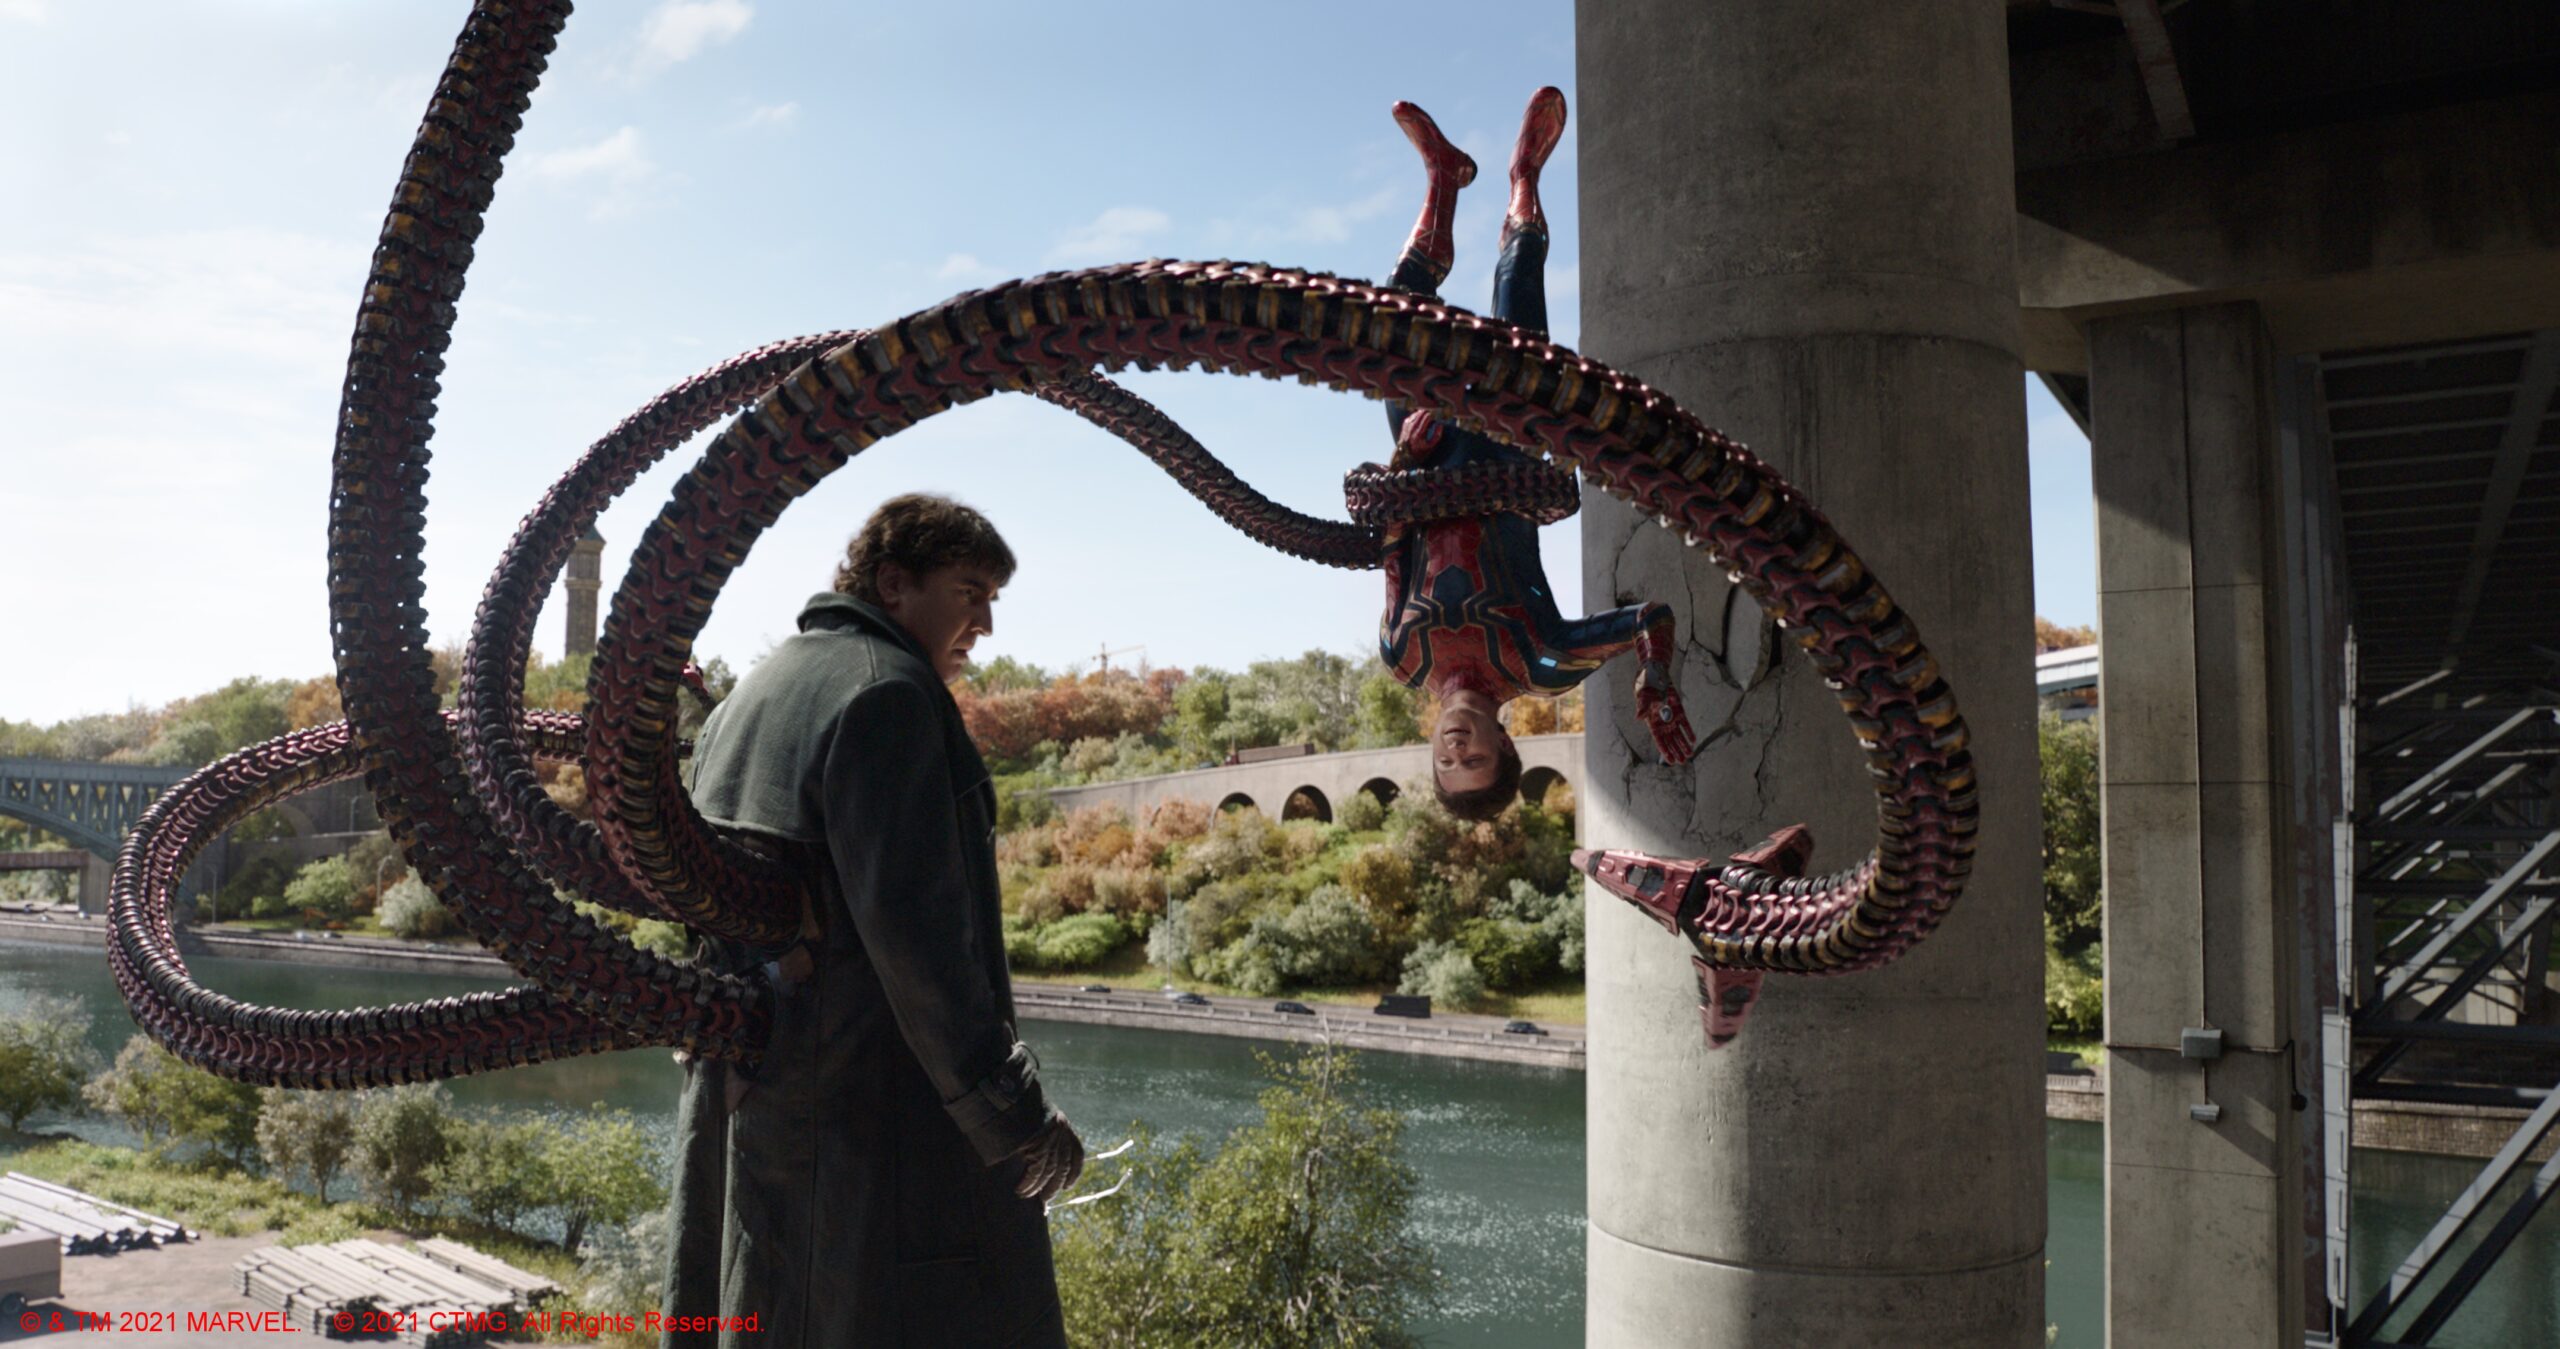 Marvel's Spider-Man - Spider-Man Vs Doctor Octopus Final Fight